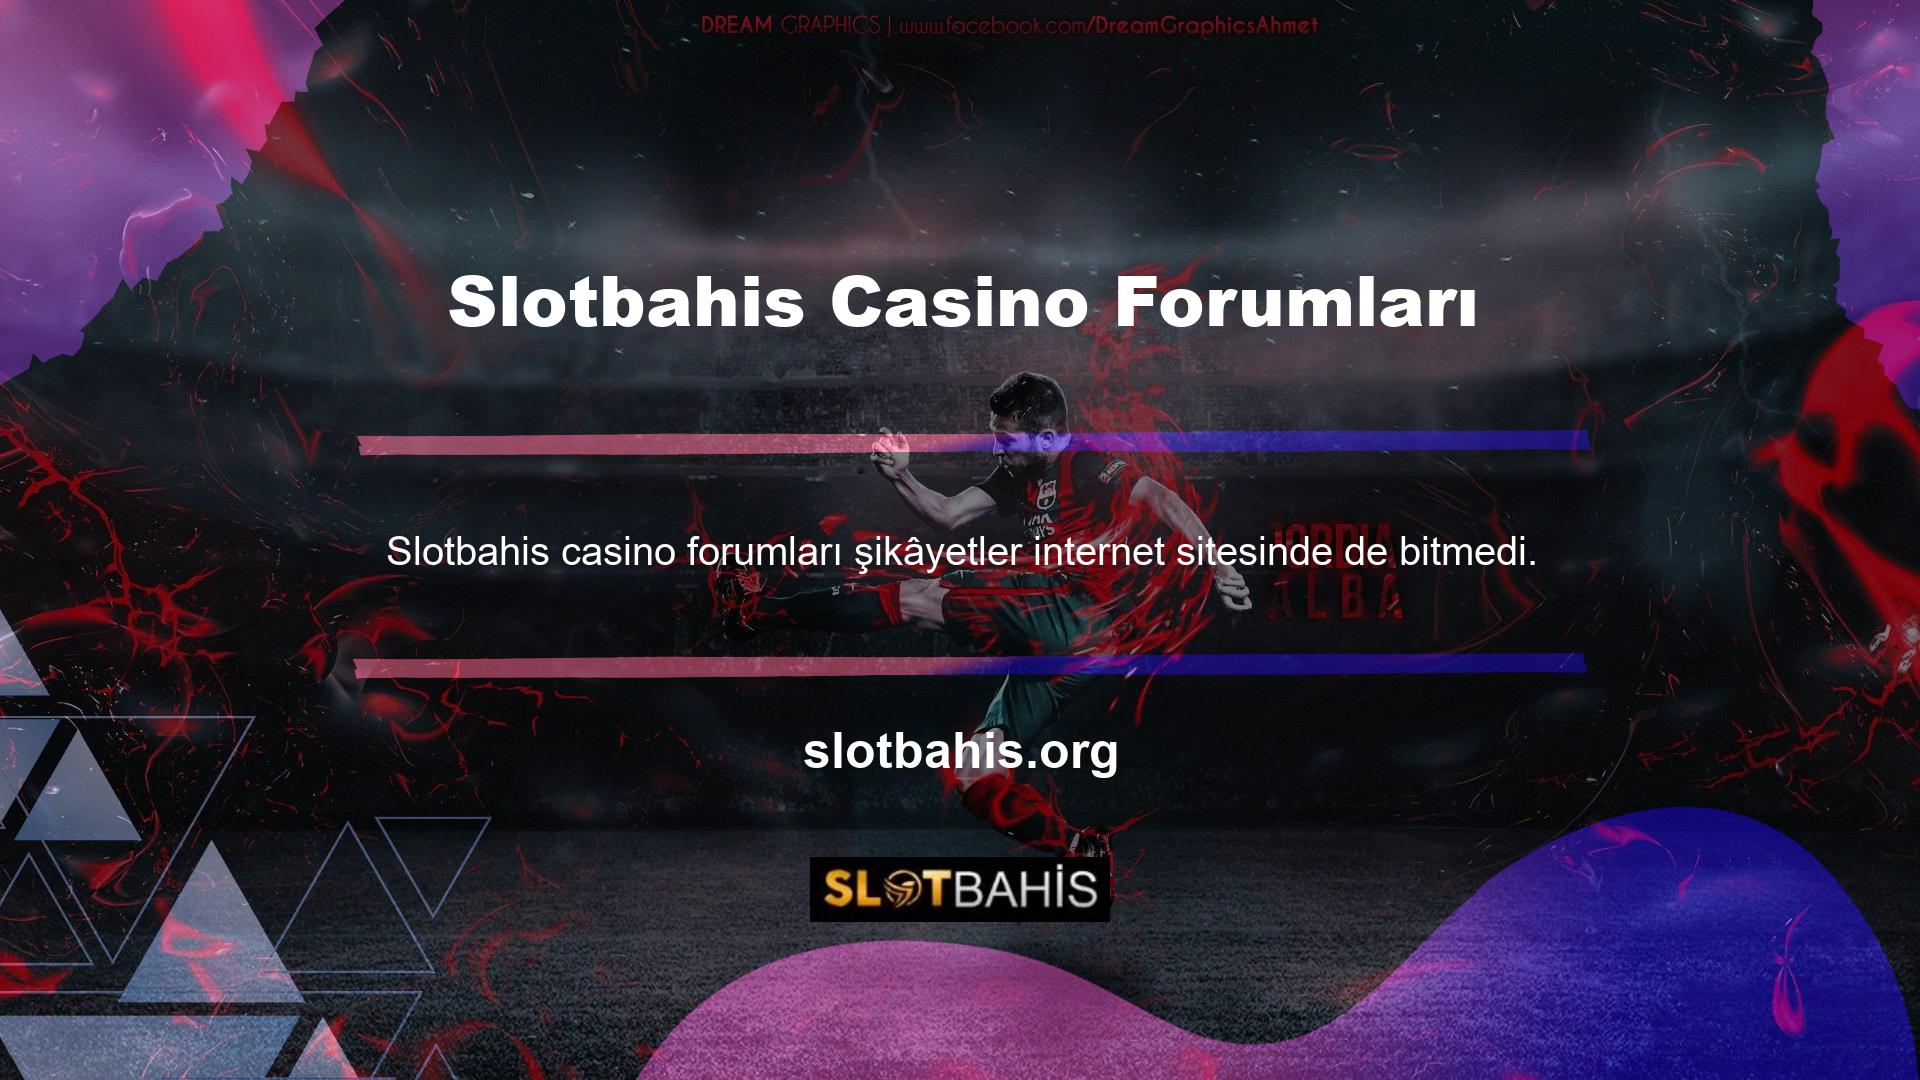 Slotbahis ile ilgili şikâyetler konusunda casino forumlarını araştırıyoruz çünkü bunlar ücretsizdir ve herkes istediği her şeyi yazabilir